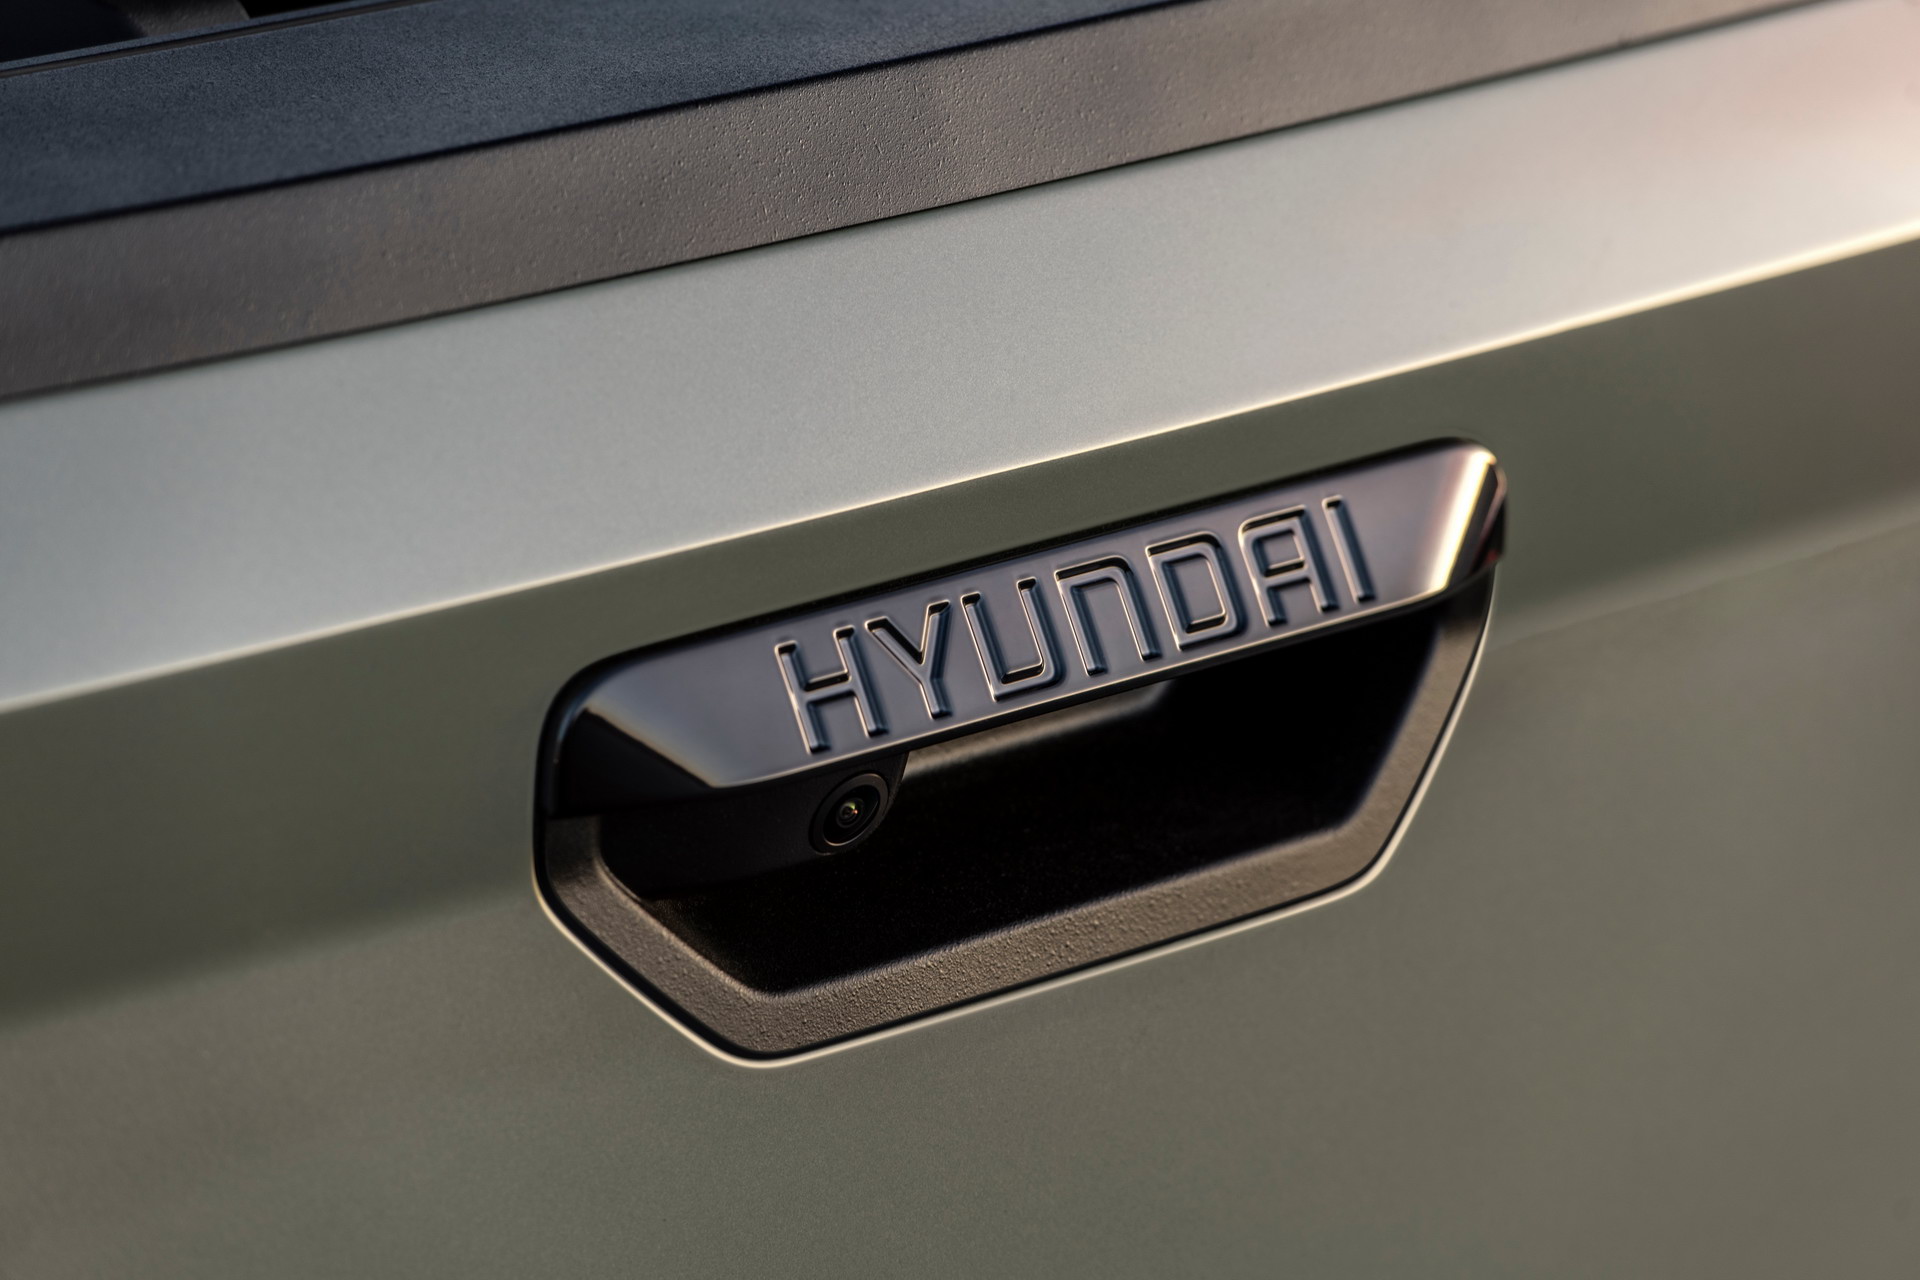 2022 Hyundai Santa Cruz resim galerisi (16.04.2021)